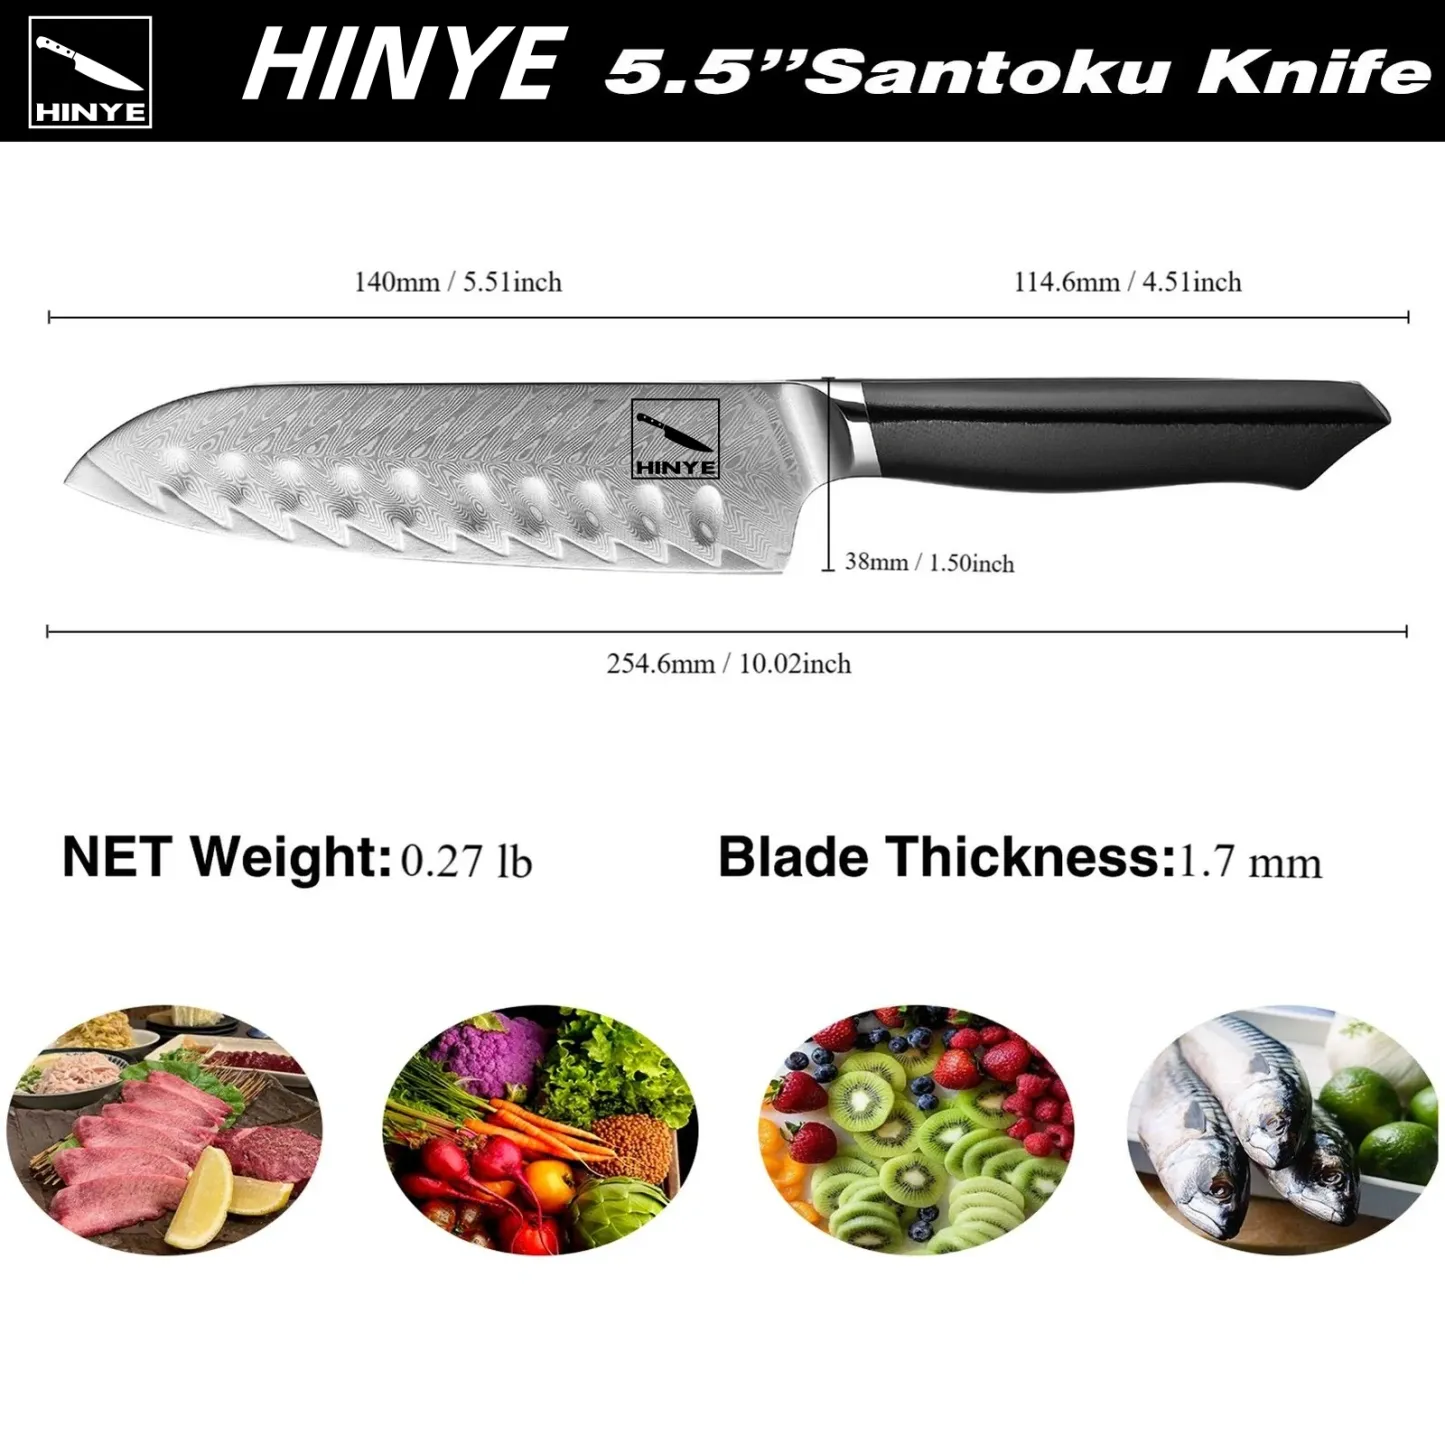 Hinye-Helix 5.5" Santoku